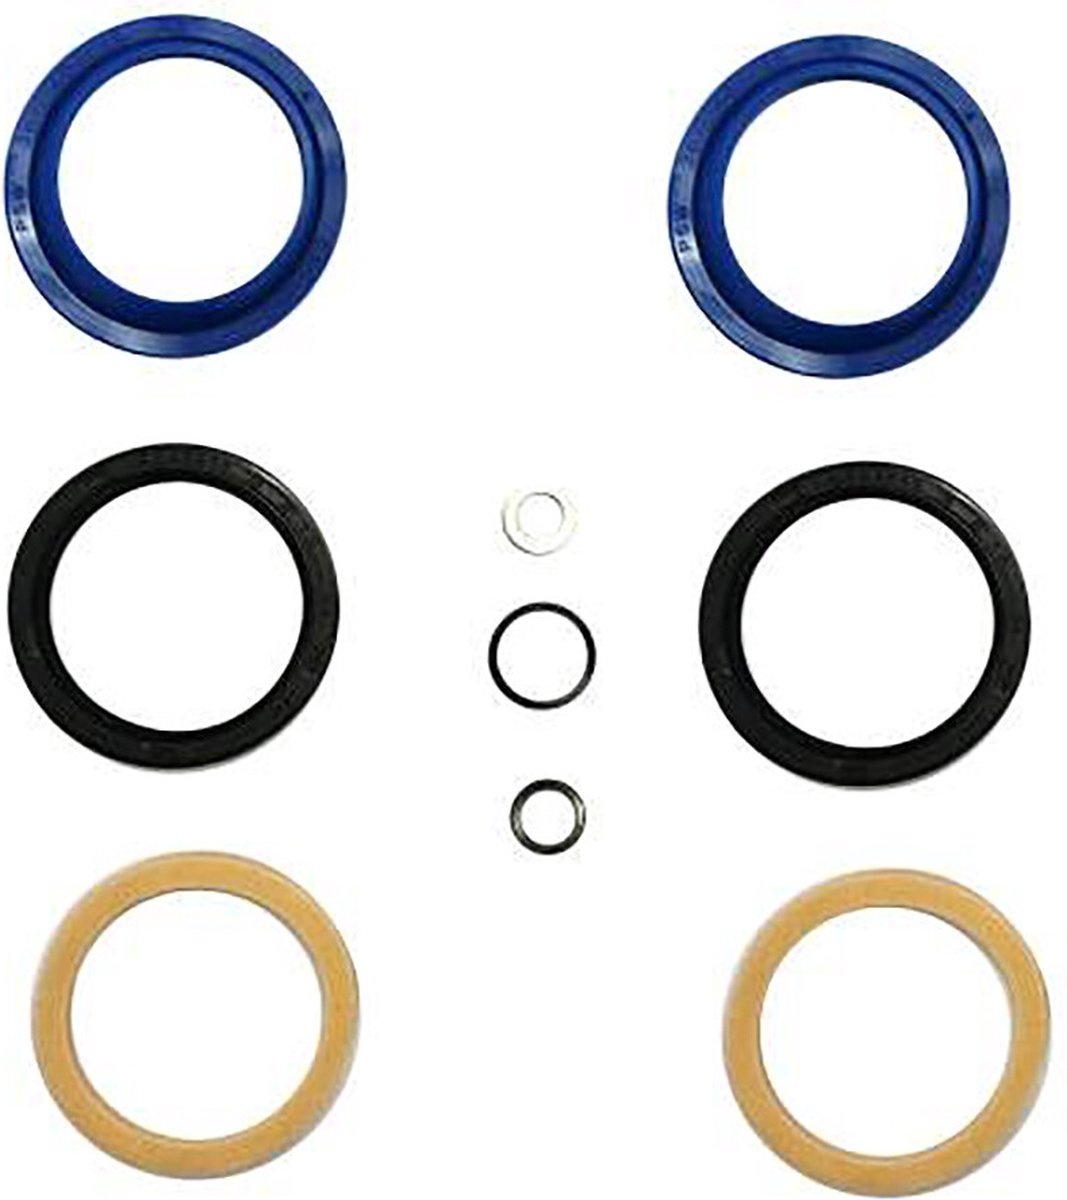 Enduro Bearings FK-6654 Afdichtingsset voor Fox 34mm, blauw/zwart